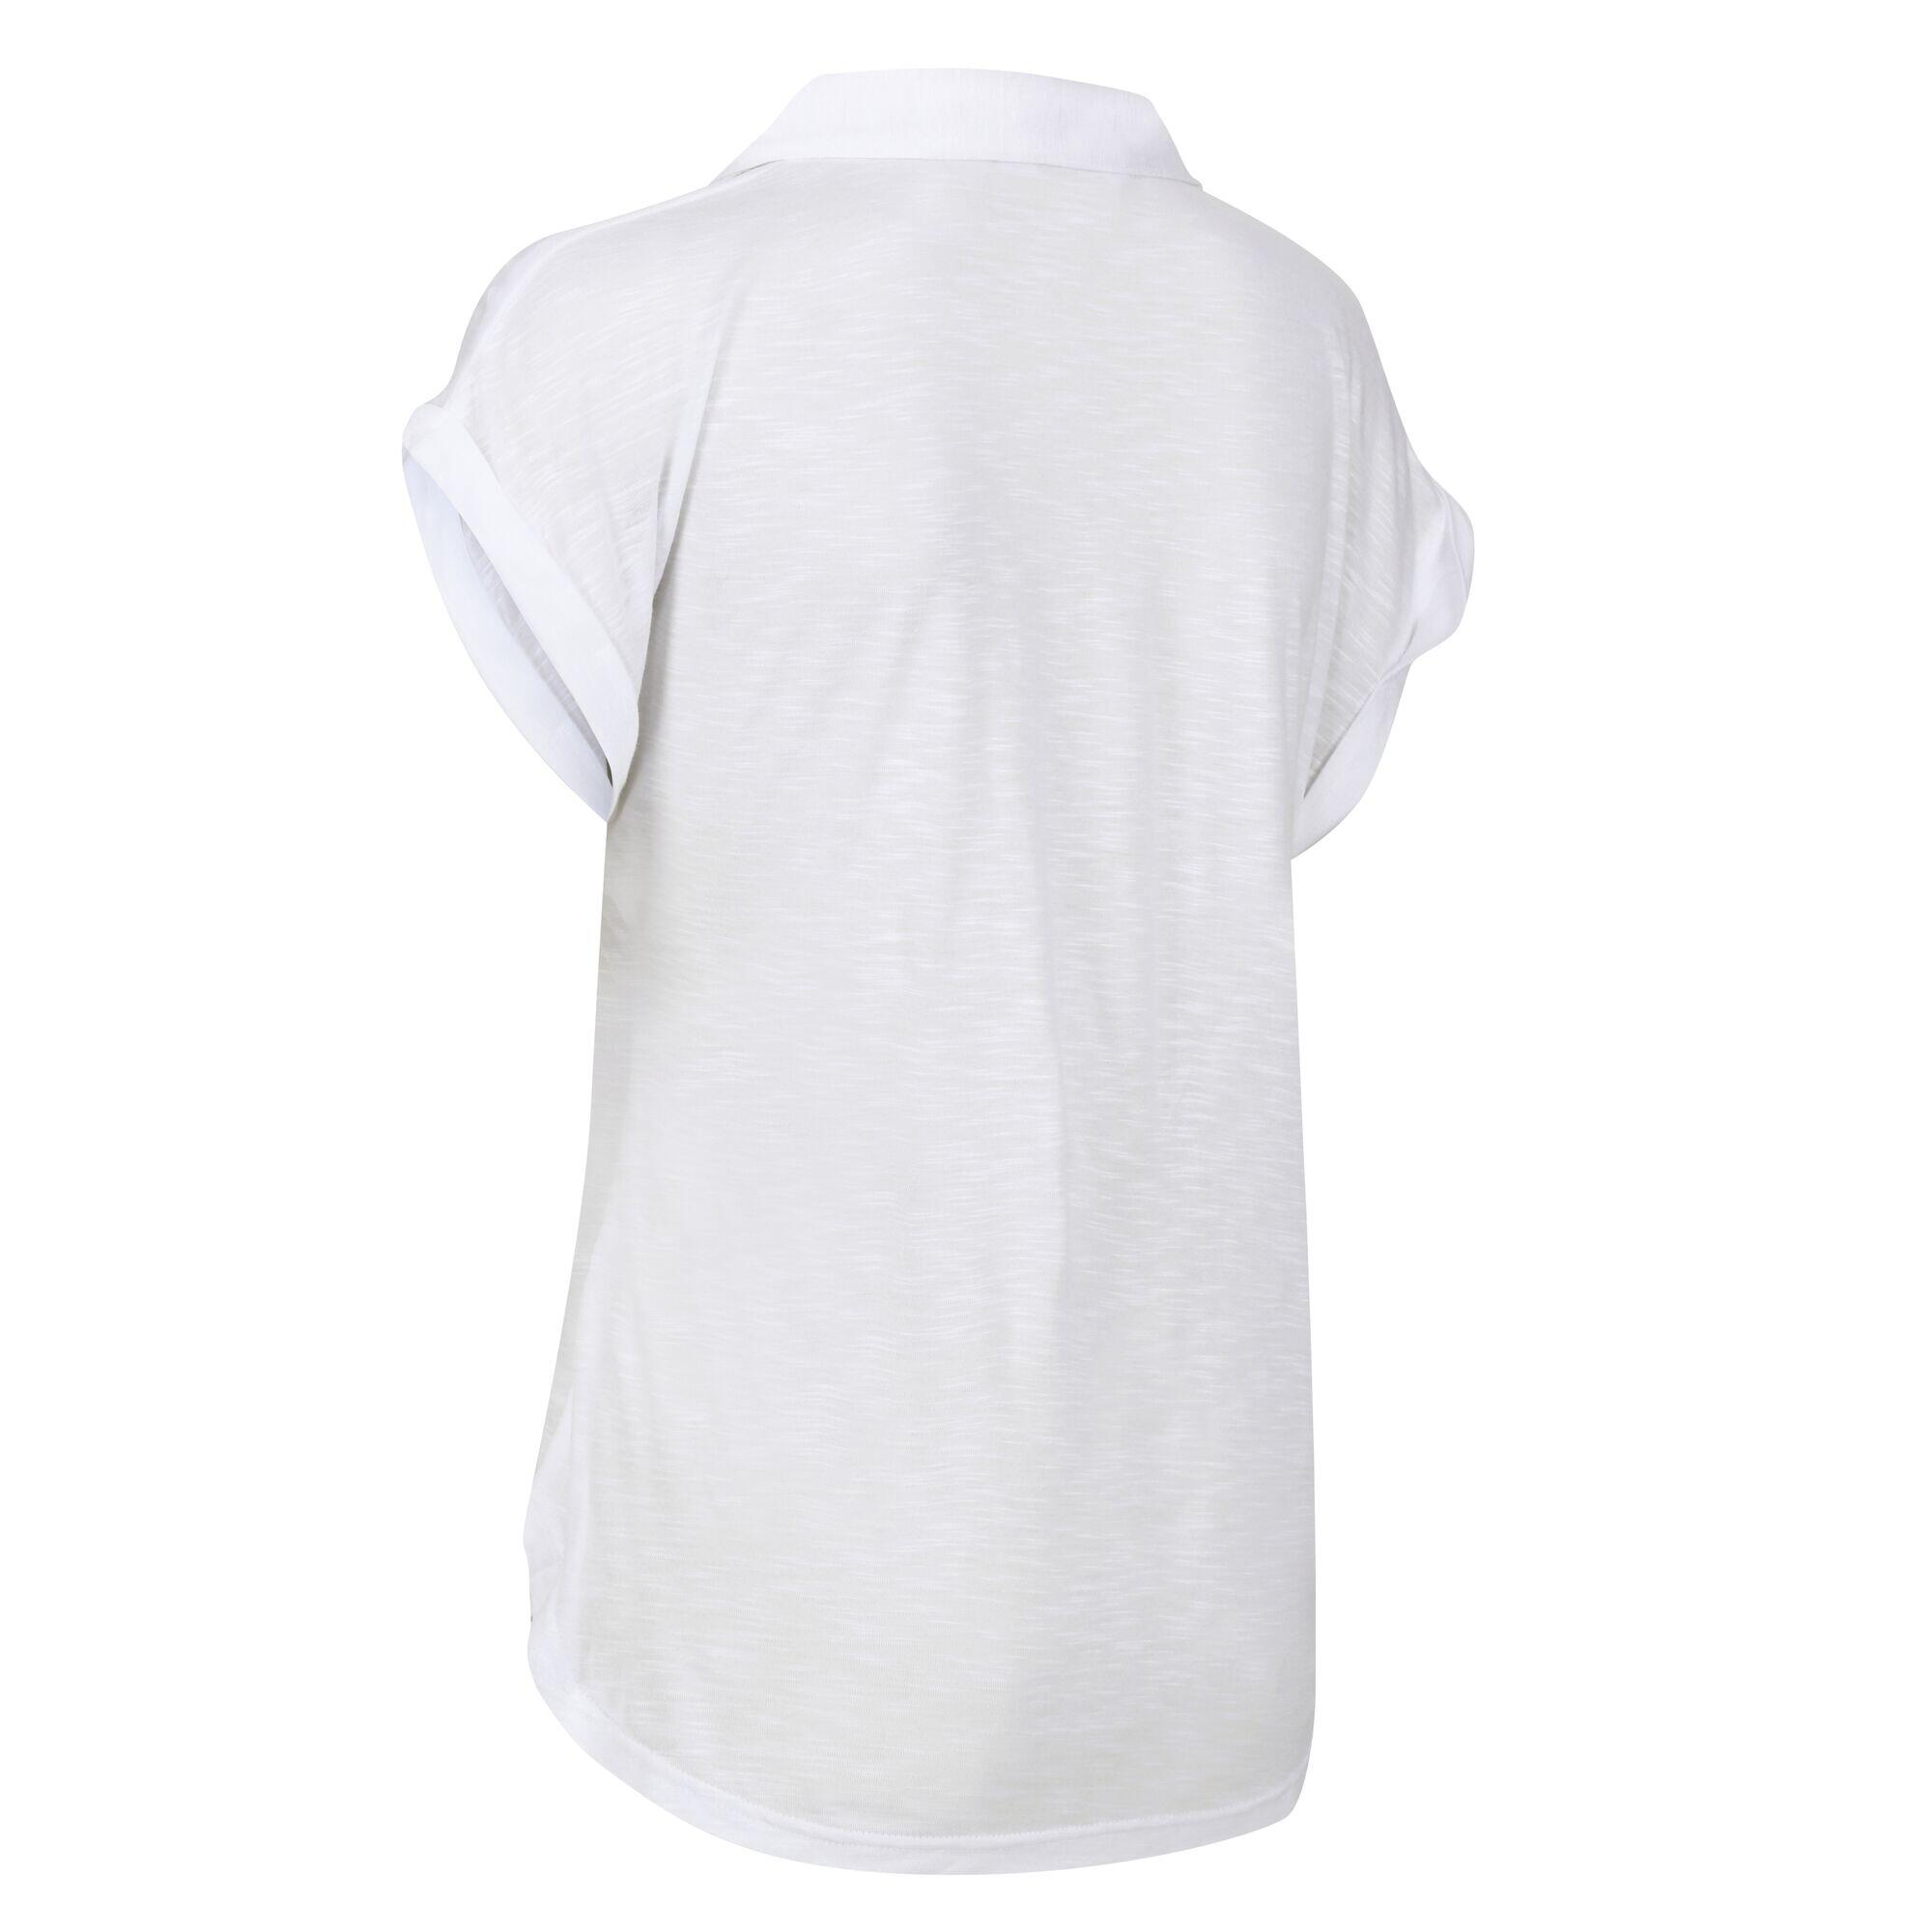 Womens/Ladies Lupine Collared TShirt (White) 4/5